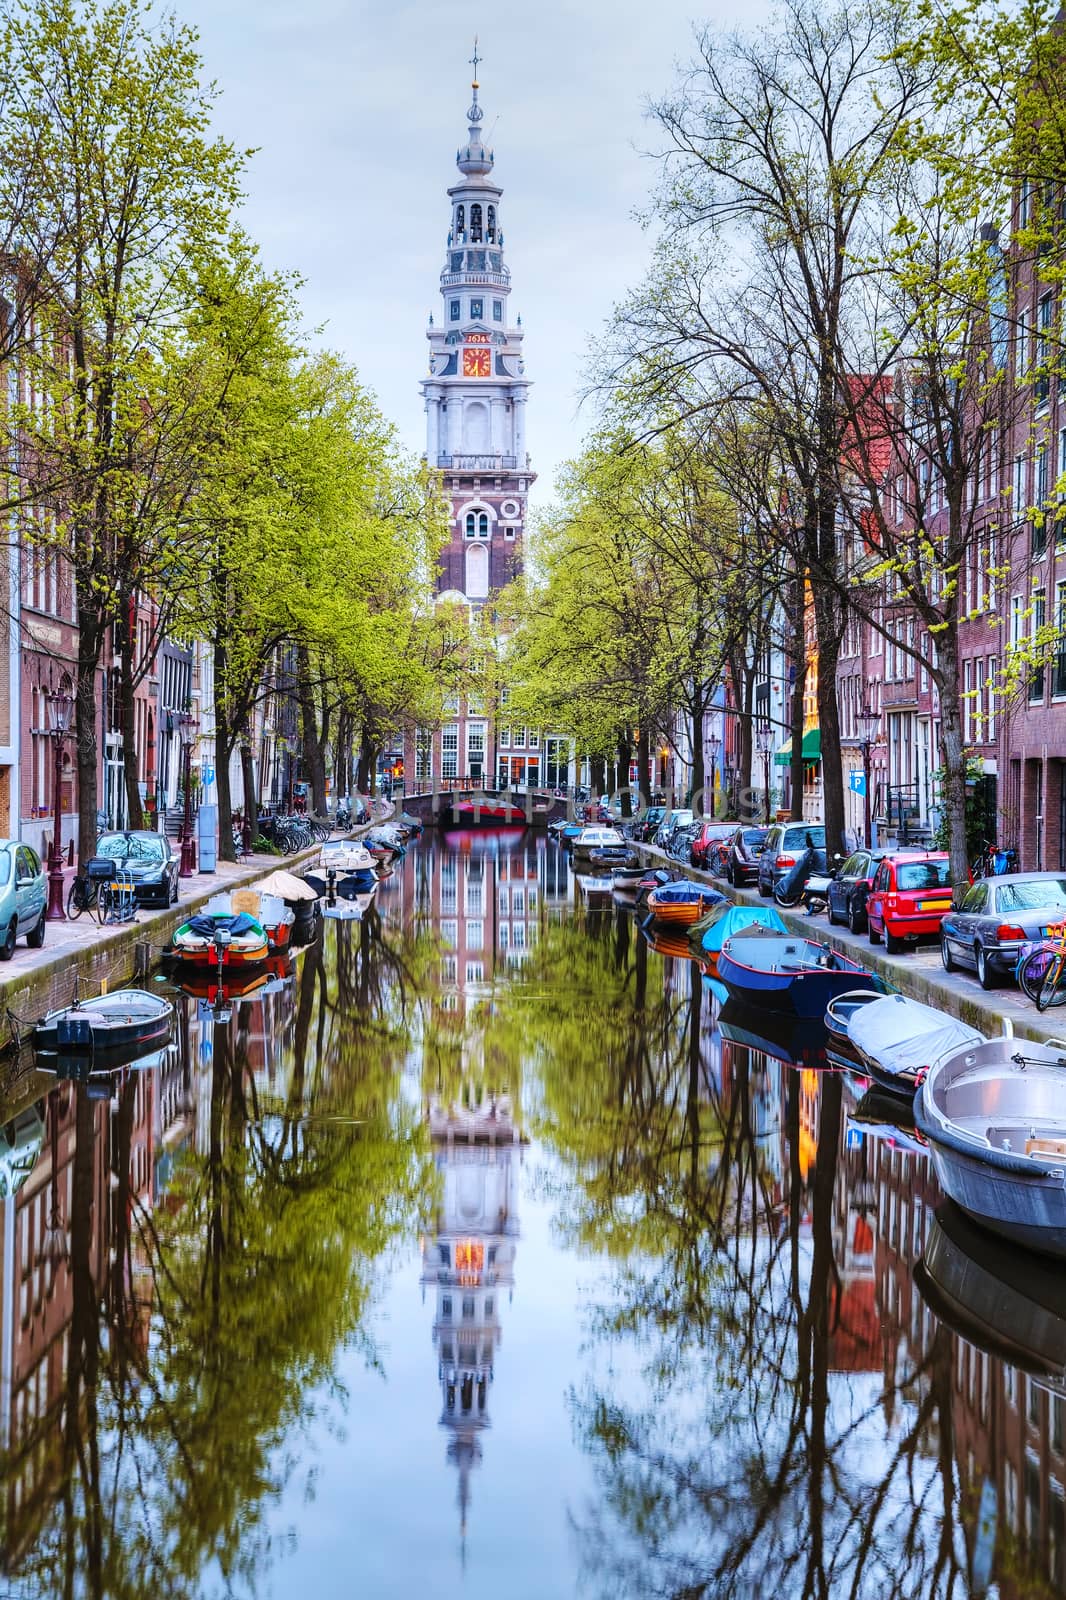 Zuiderkerk church in Amsterdam by AndreyKr